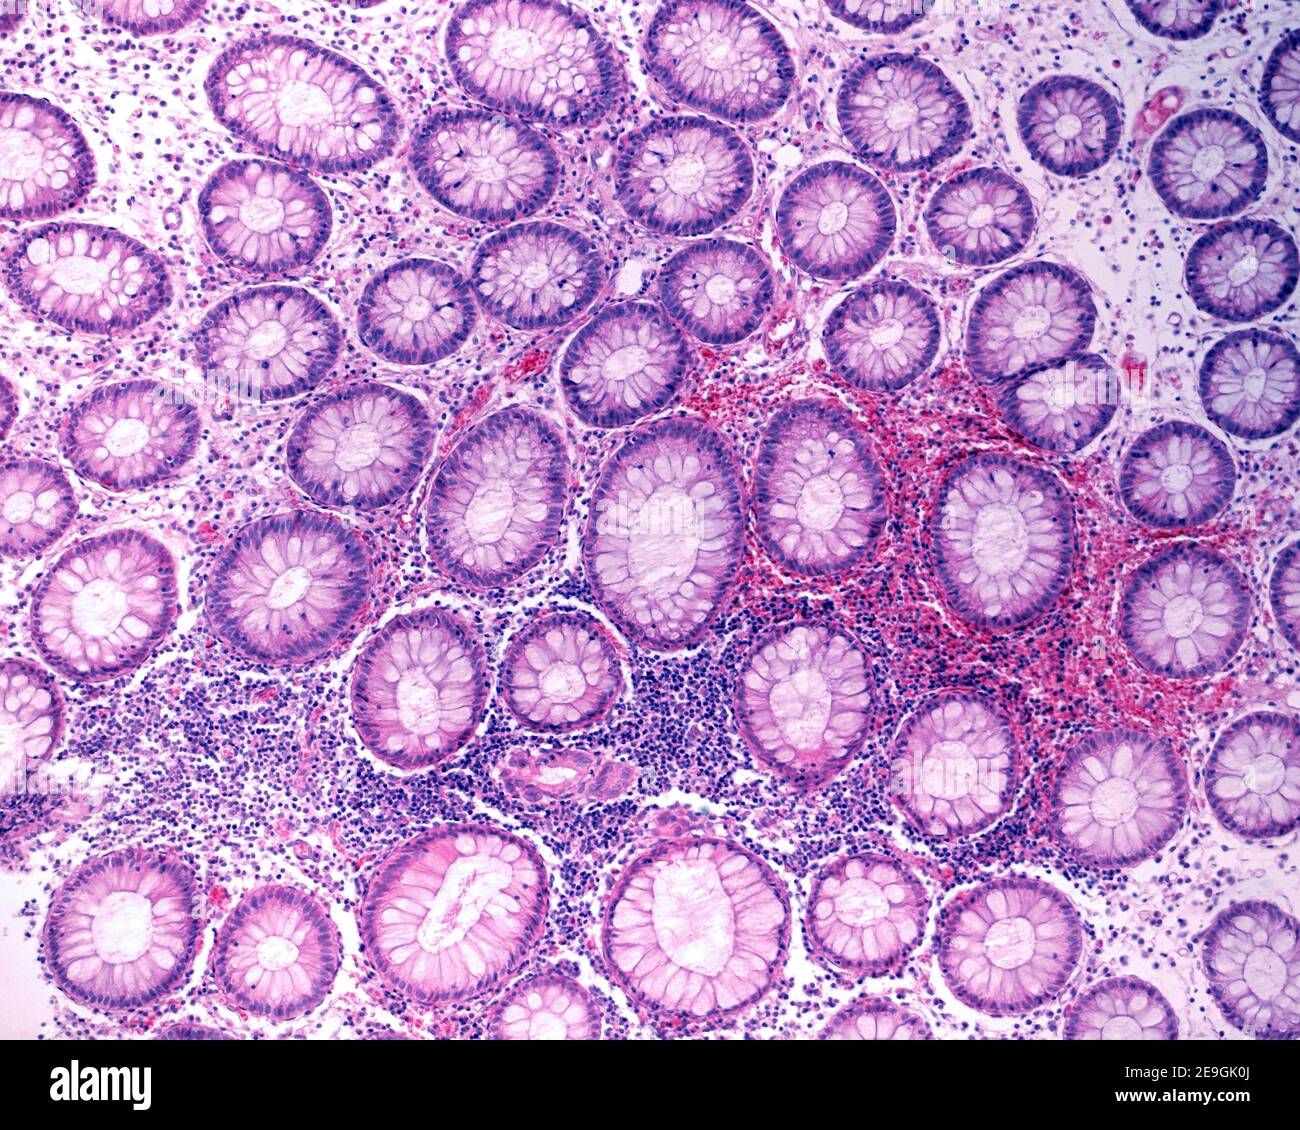 Coupe transversale des cryptes de Lieberkühn d'un côlon humain, parmi lesquelles il y a des cellules inflammatoires abondantes et des globules rouges. Banque D'Images